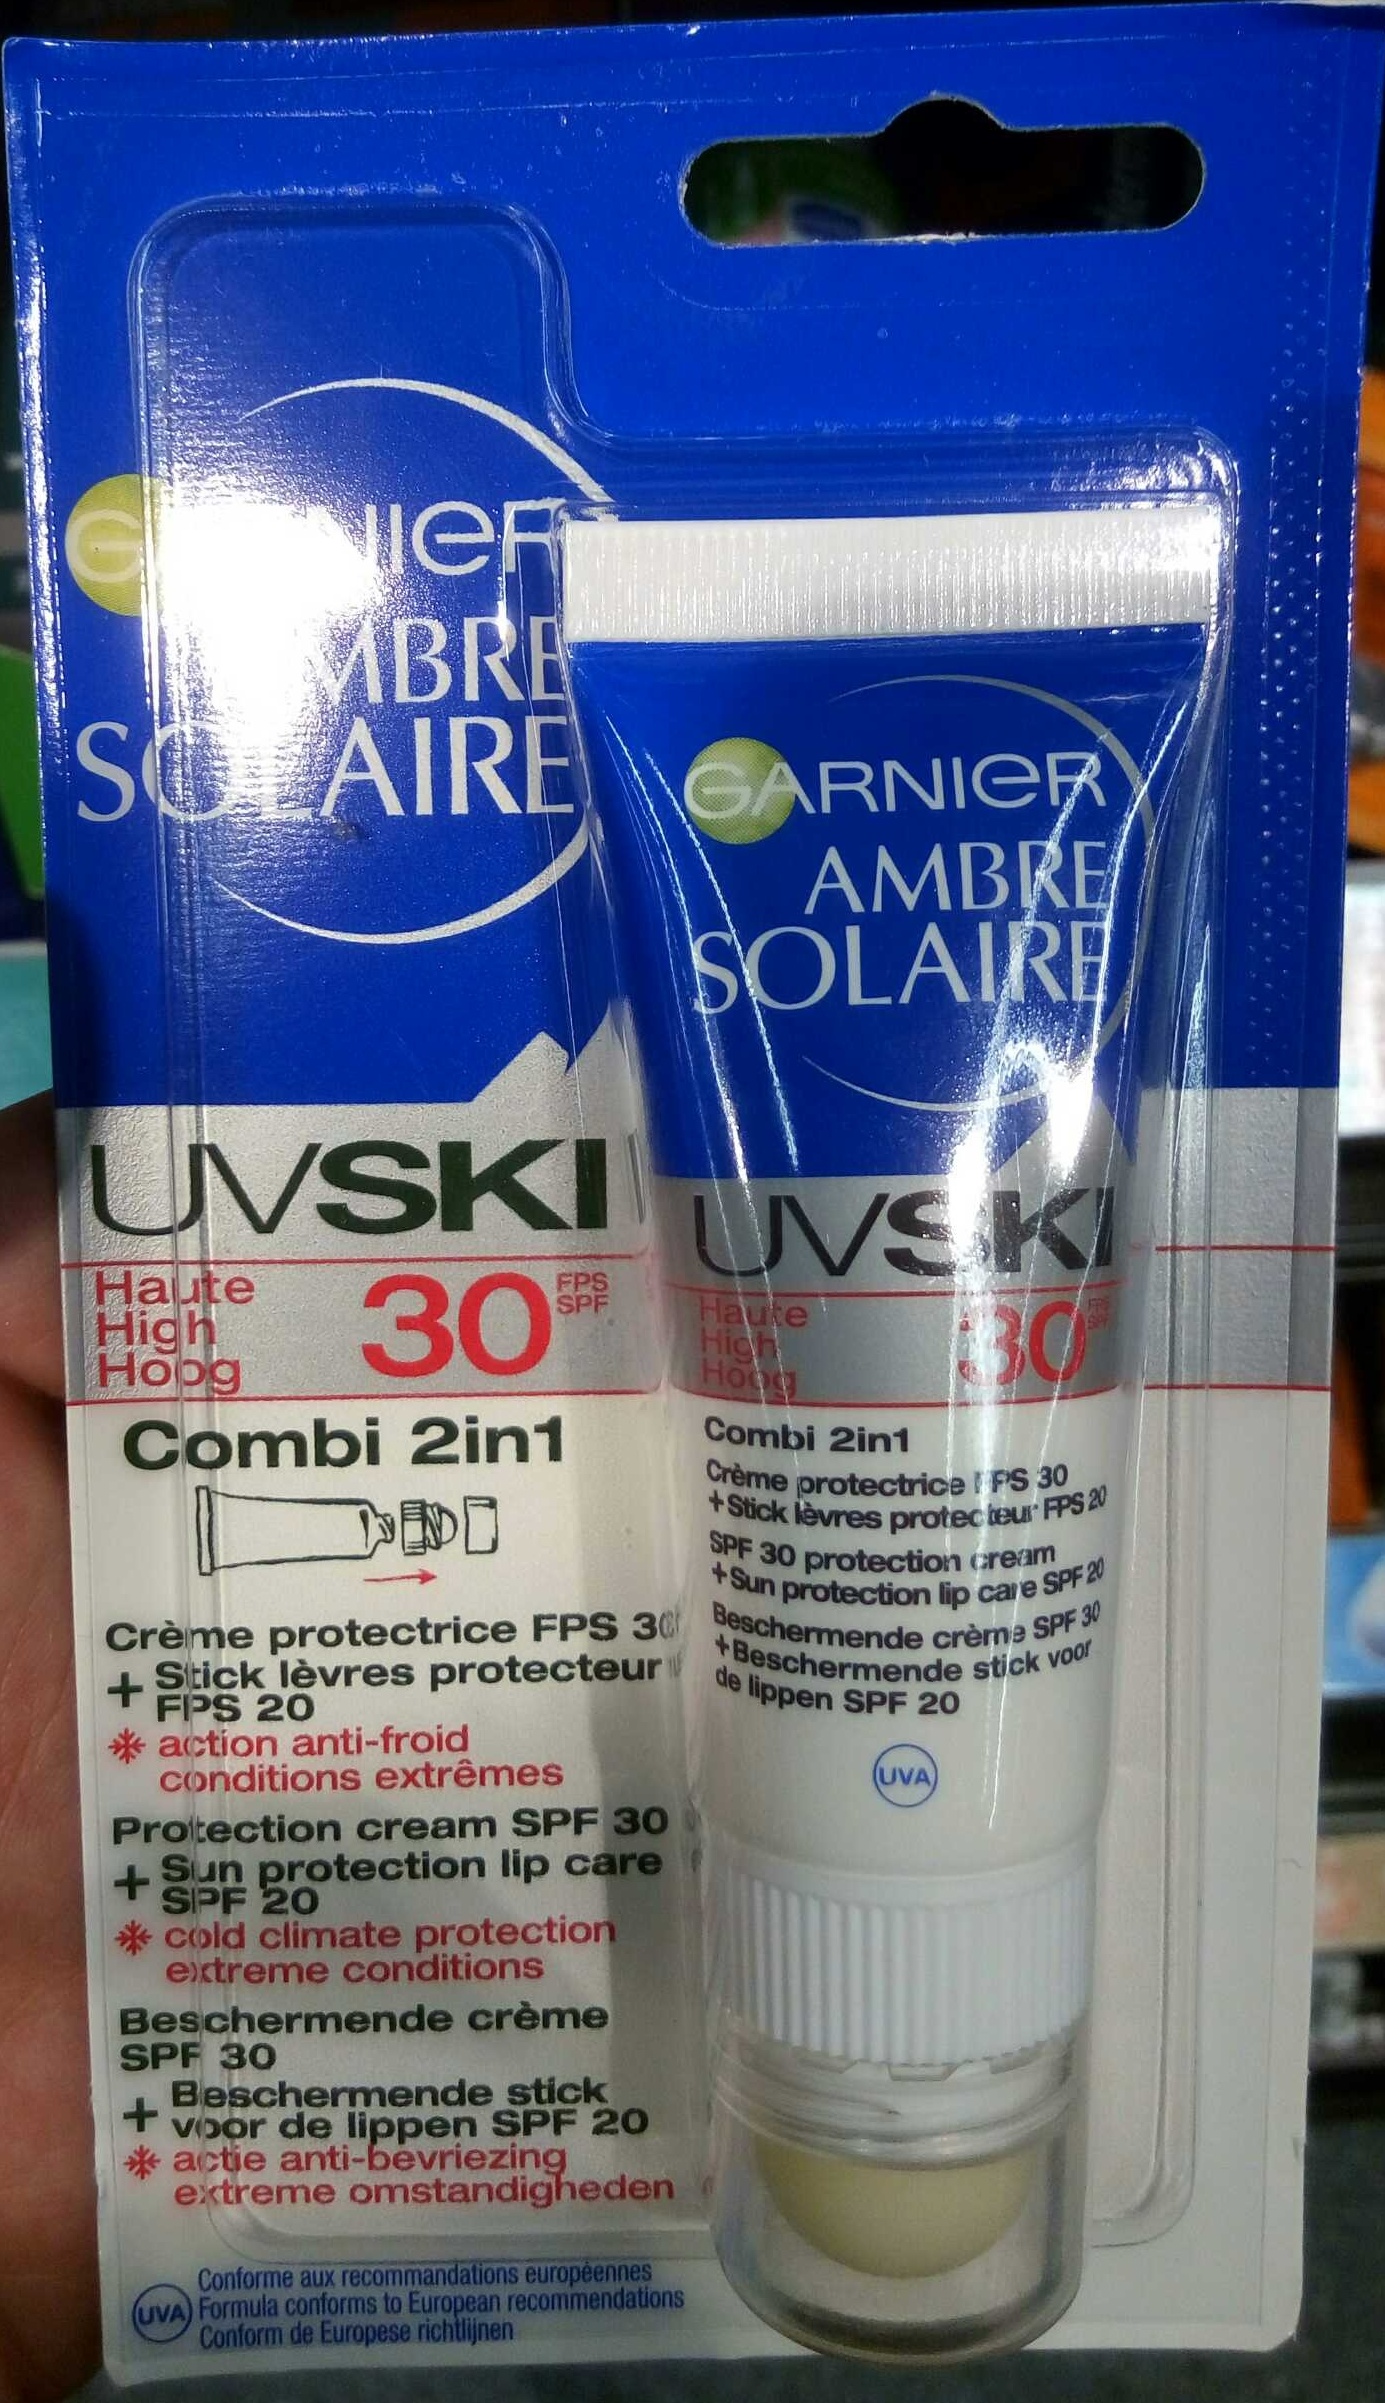 Ambre Solaire UV Ski 30 Combi 2in1 Crème protectrice + Stick lèvres protecteur - 製品 - fr